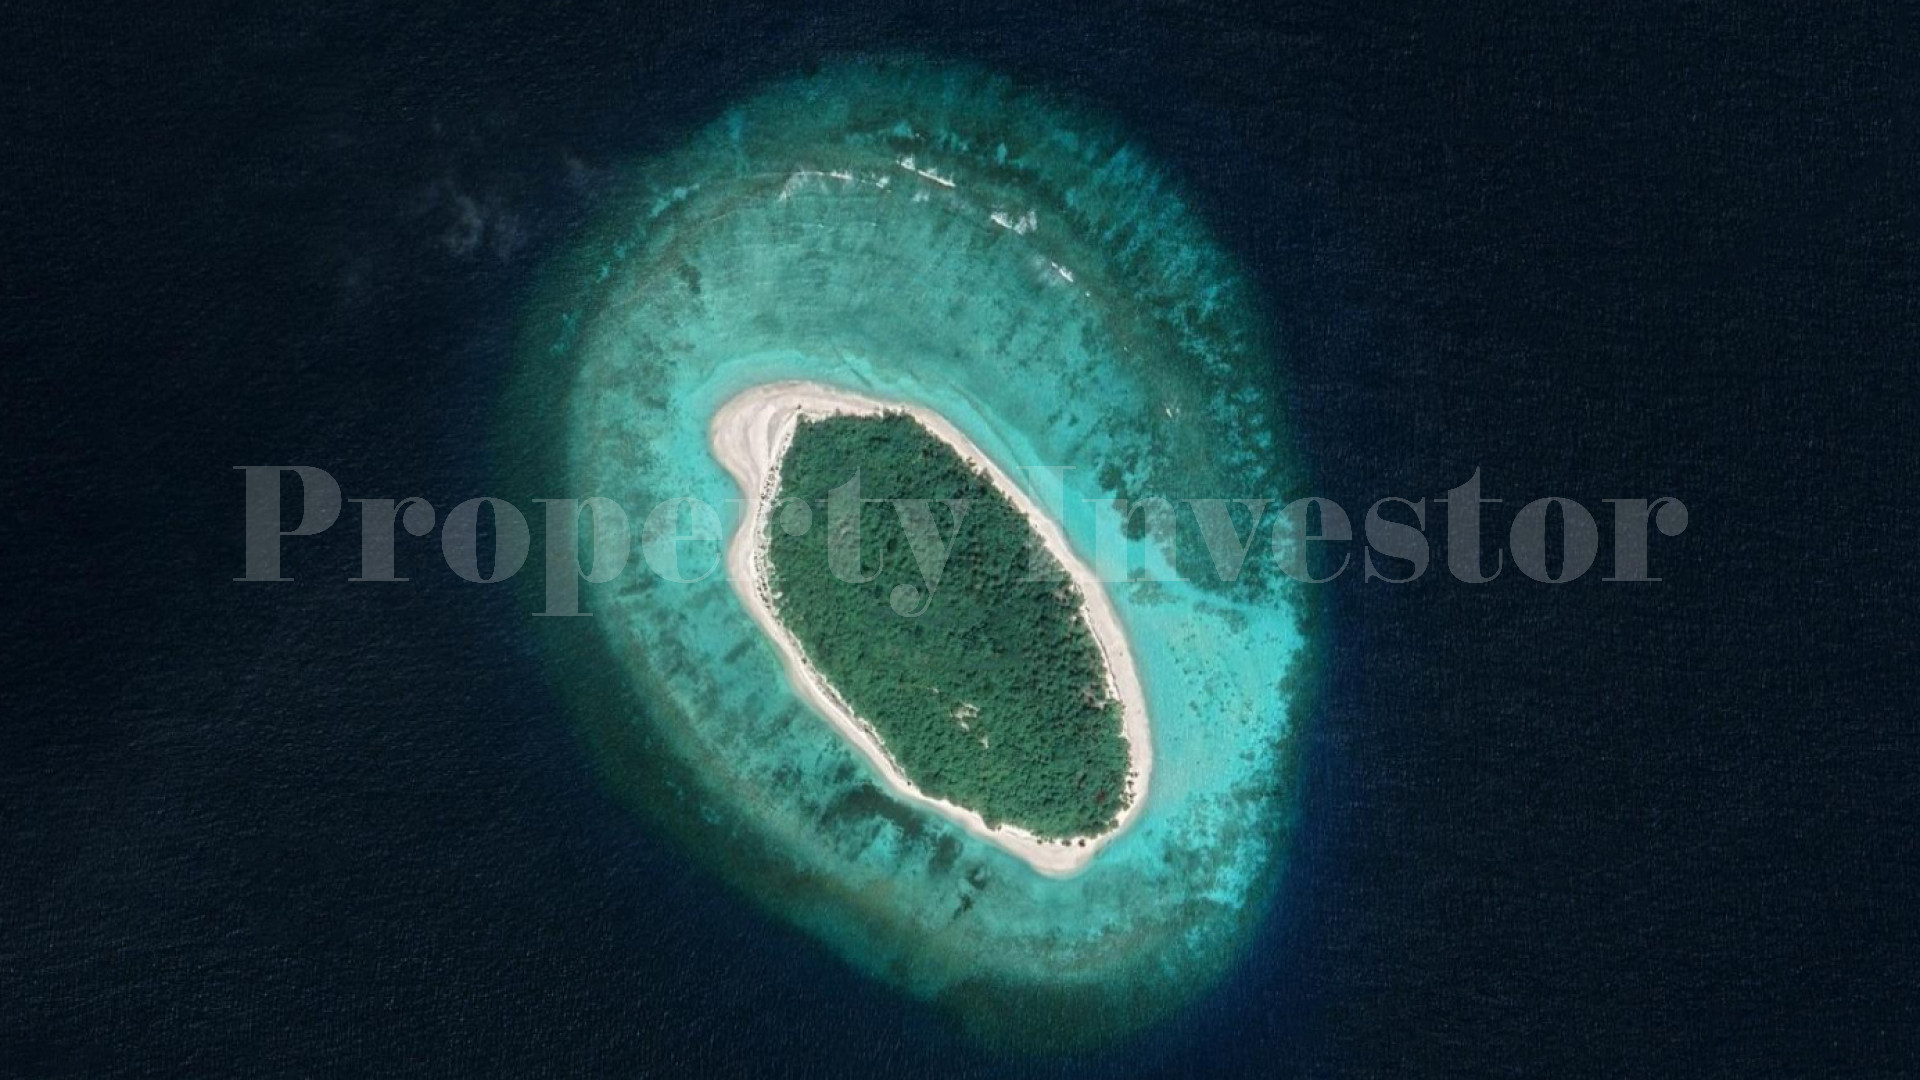 Райский частный нетронутый остров 17 гектаров под коммерческое развитие на Мальдивах